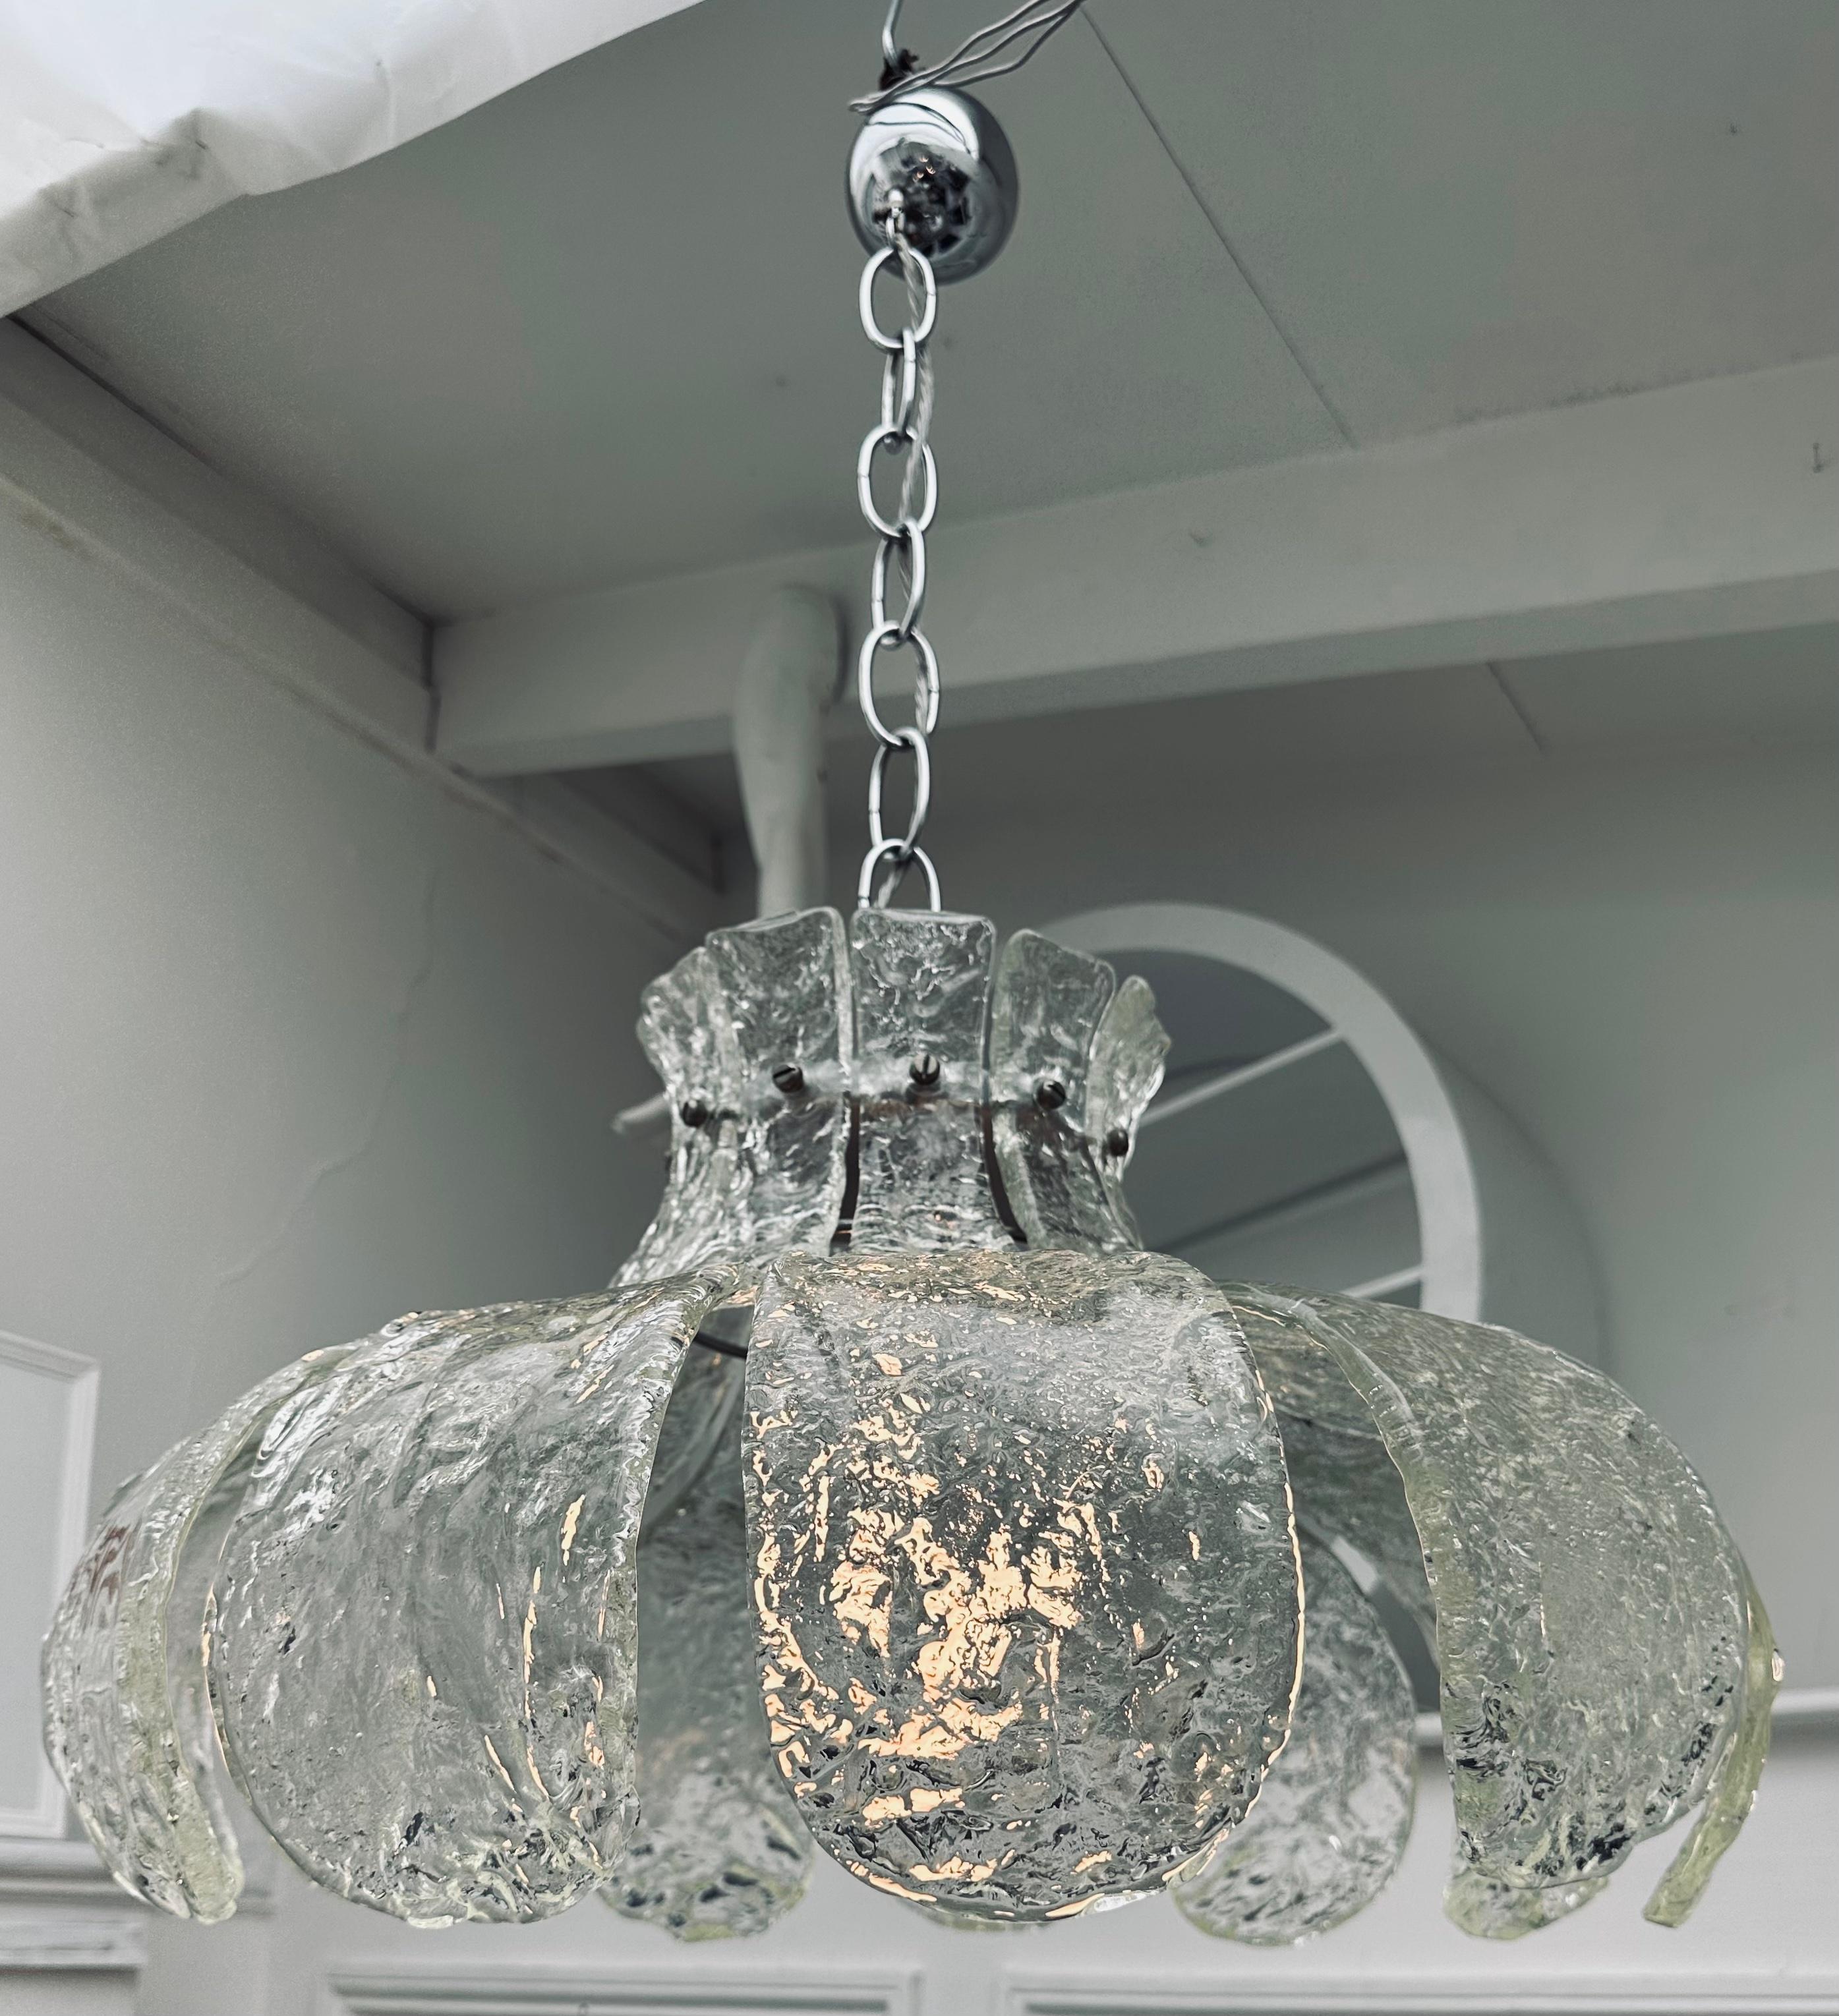 Italienische Murano-Glas-Hängeleuchte aus der Mitte des 19. Jahrhunderts mit 11 einzelnen gebogenen, strukturierten, dicken Klarglasblütenblättern, die mit einer kleinen verchromten Flachkopfschraube an einem verchromten Metallrahmen befestigt sind